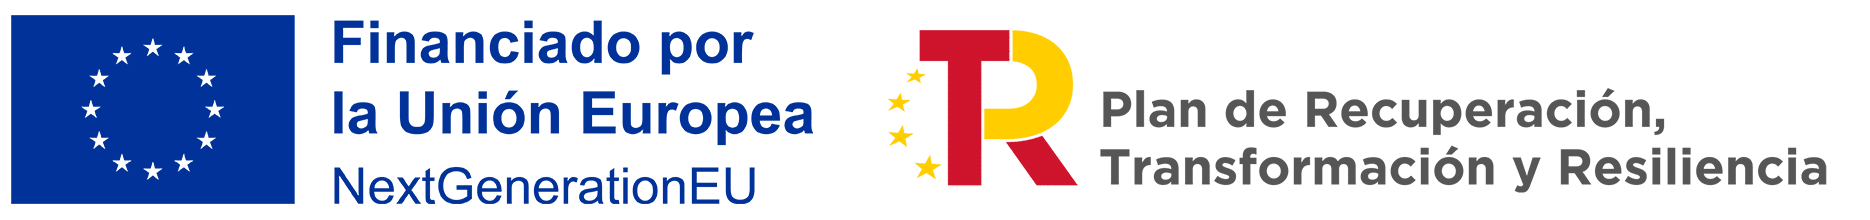 banner kit digital - financiado por la unión europea